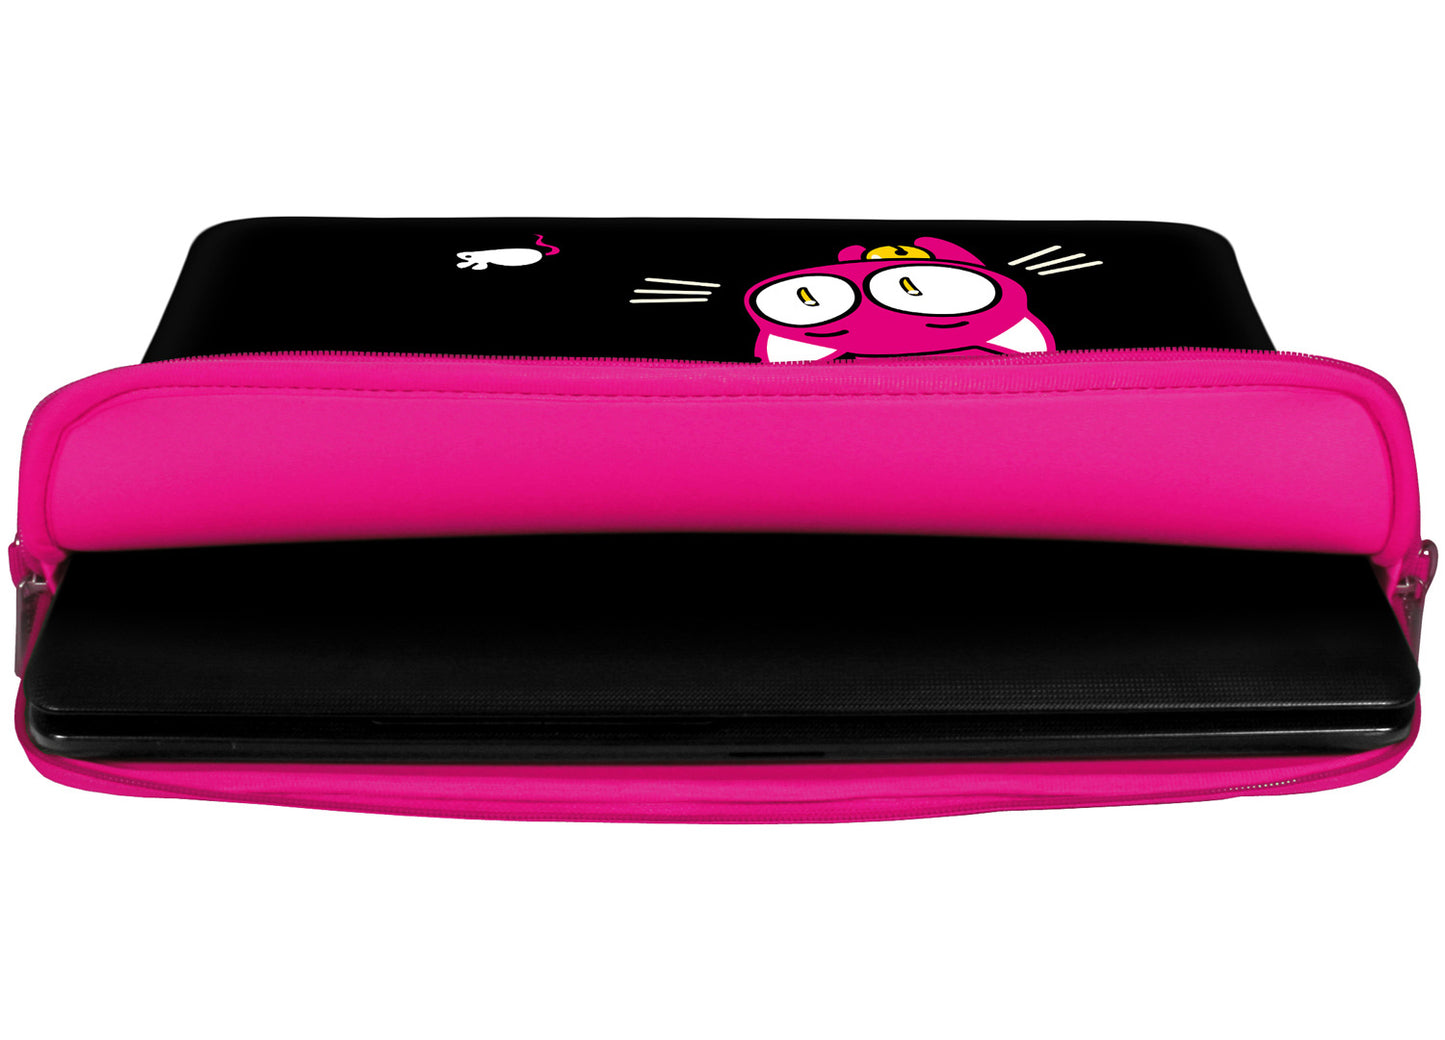 Innenansicht mit Schutzlippen der LS141 Kitty to Go Designer Laptop Tasche in pink aus wasserabweisendem Neopren